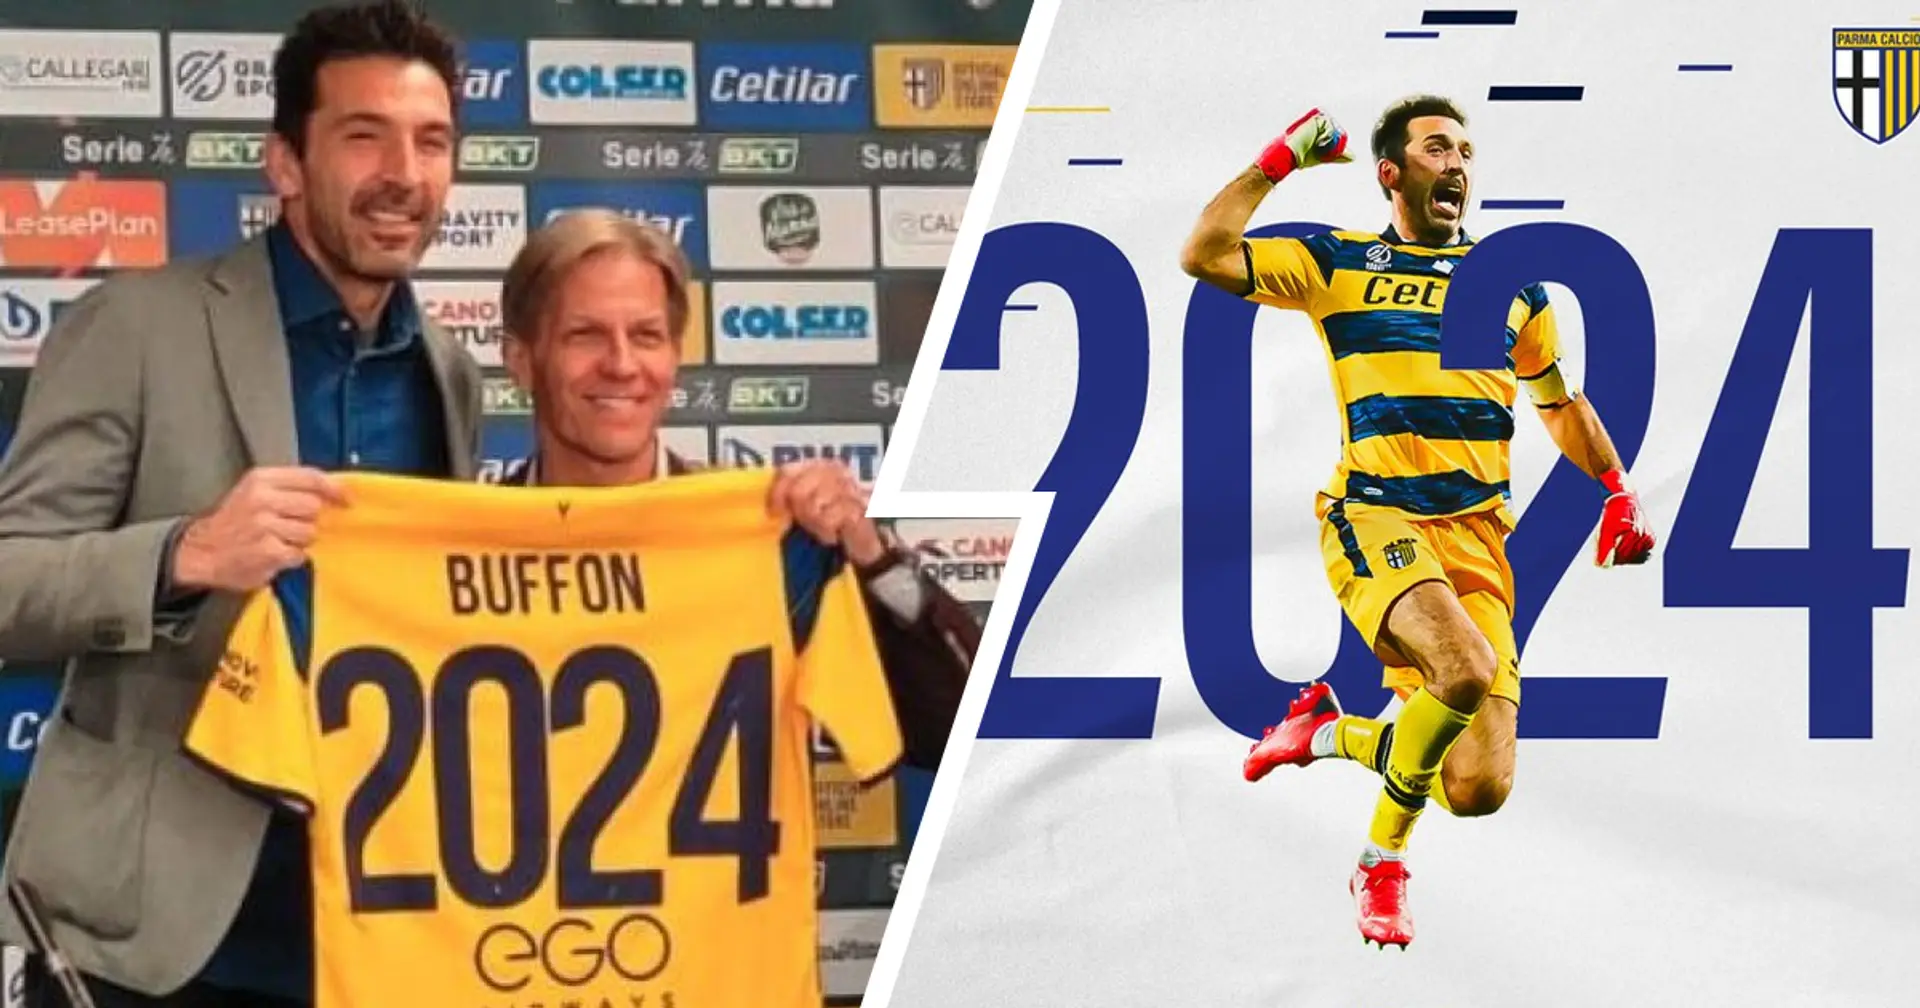 Buffon l'immortale: l'ex portiere della Juventus ha rinnovato con il Parma, in campo fino a 46 anni